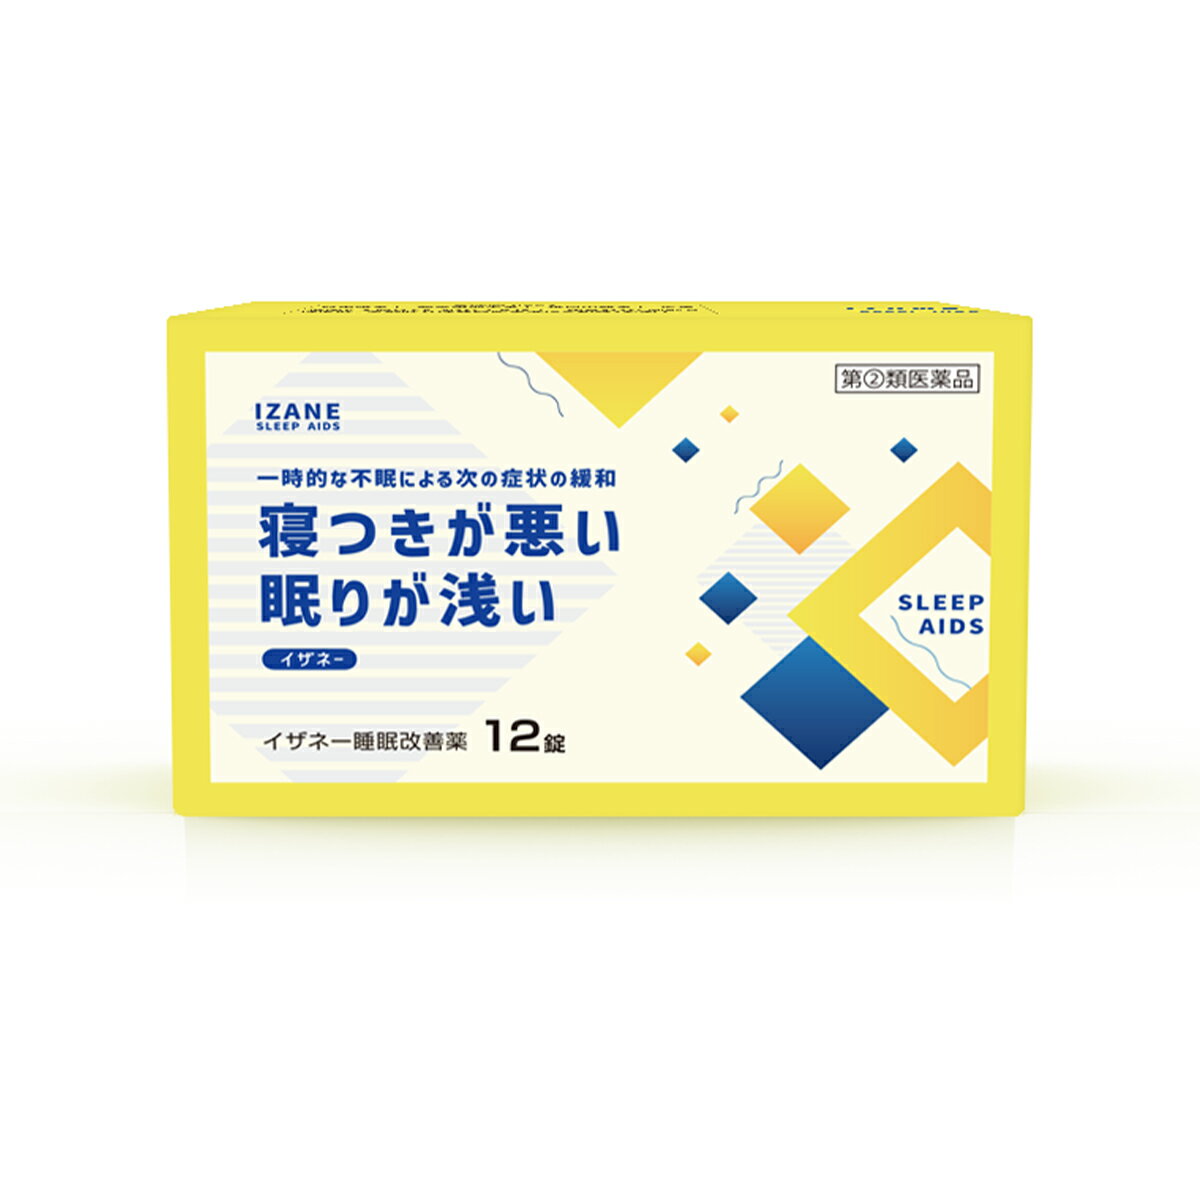 【第 2 類医薬品】 イザネー 睡眠改善薬 12錠 